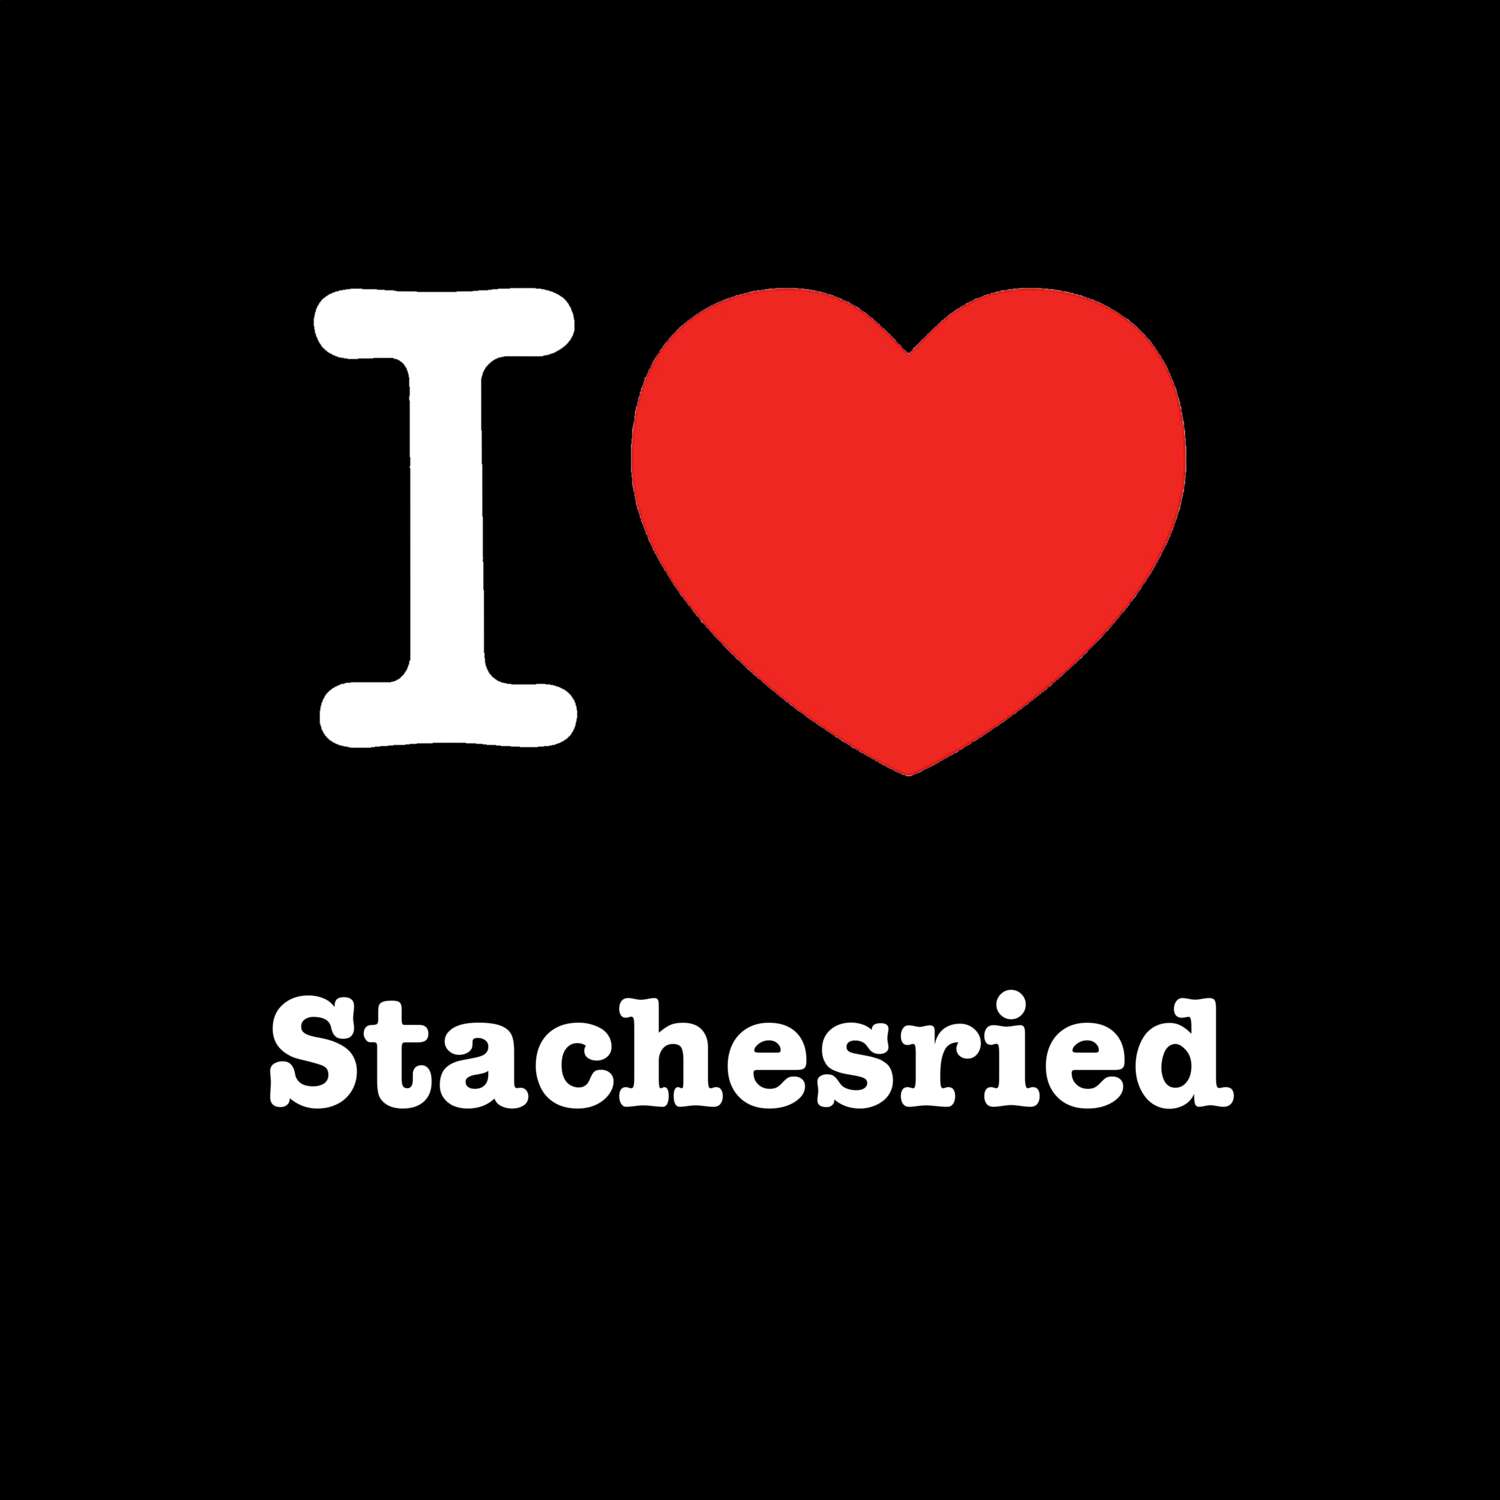 Stachesried T-Shirt »I love«